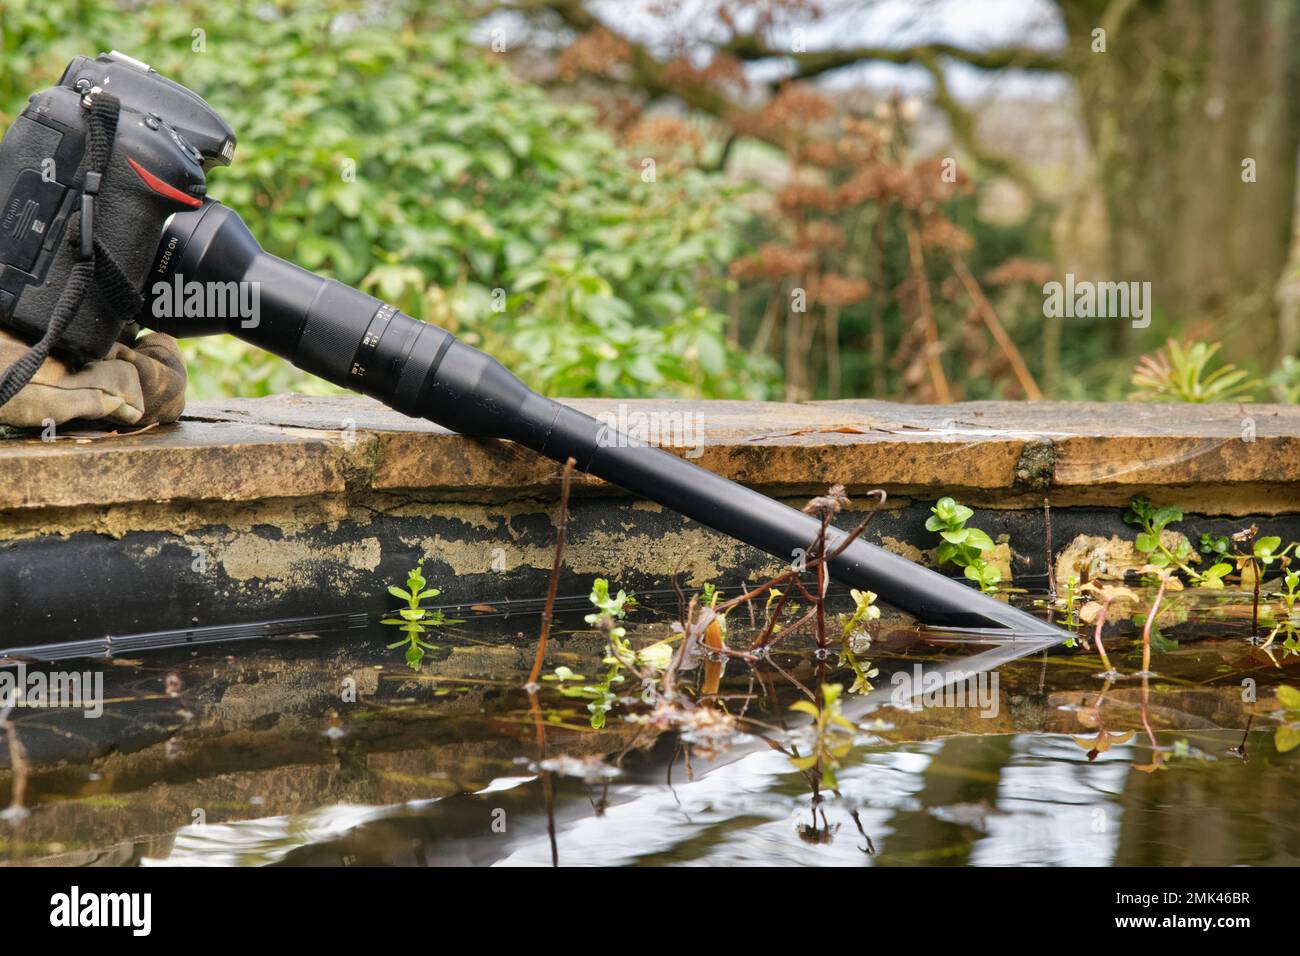 Makrosondenobjektiv auf einer DSLR-Kamera montiert und taucht unter Wasser, um das Leben im Gartenteich zu fotografieren, Wiltshire, Großbritannien, Januar. Stockfoto